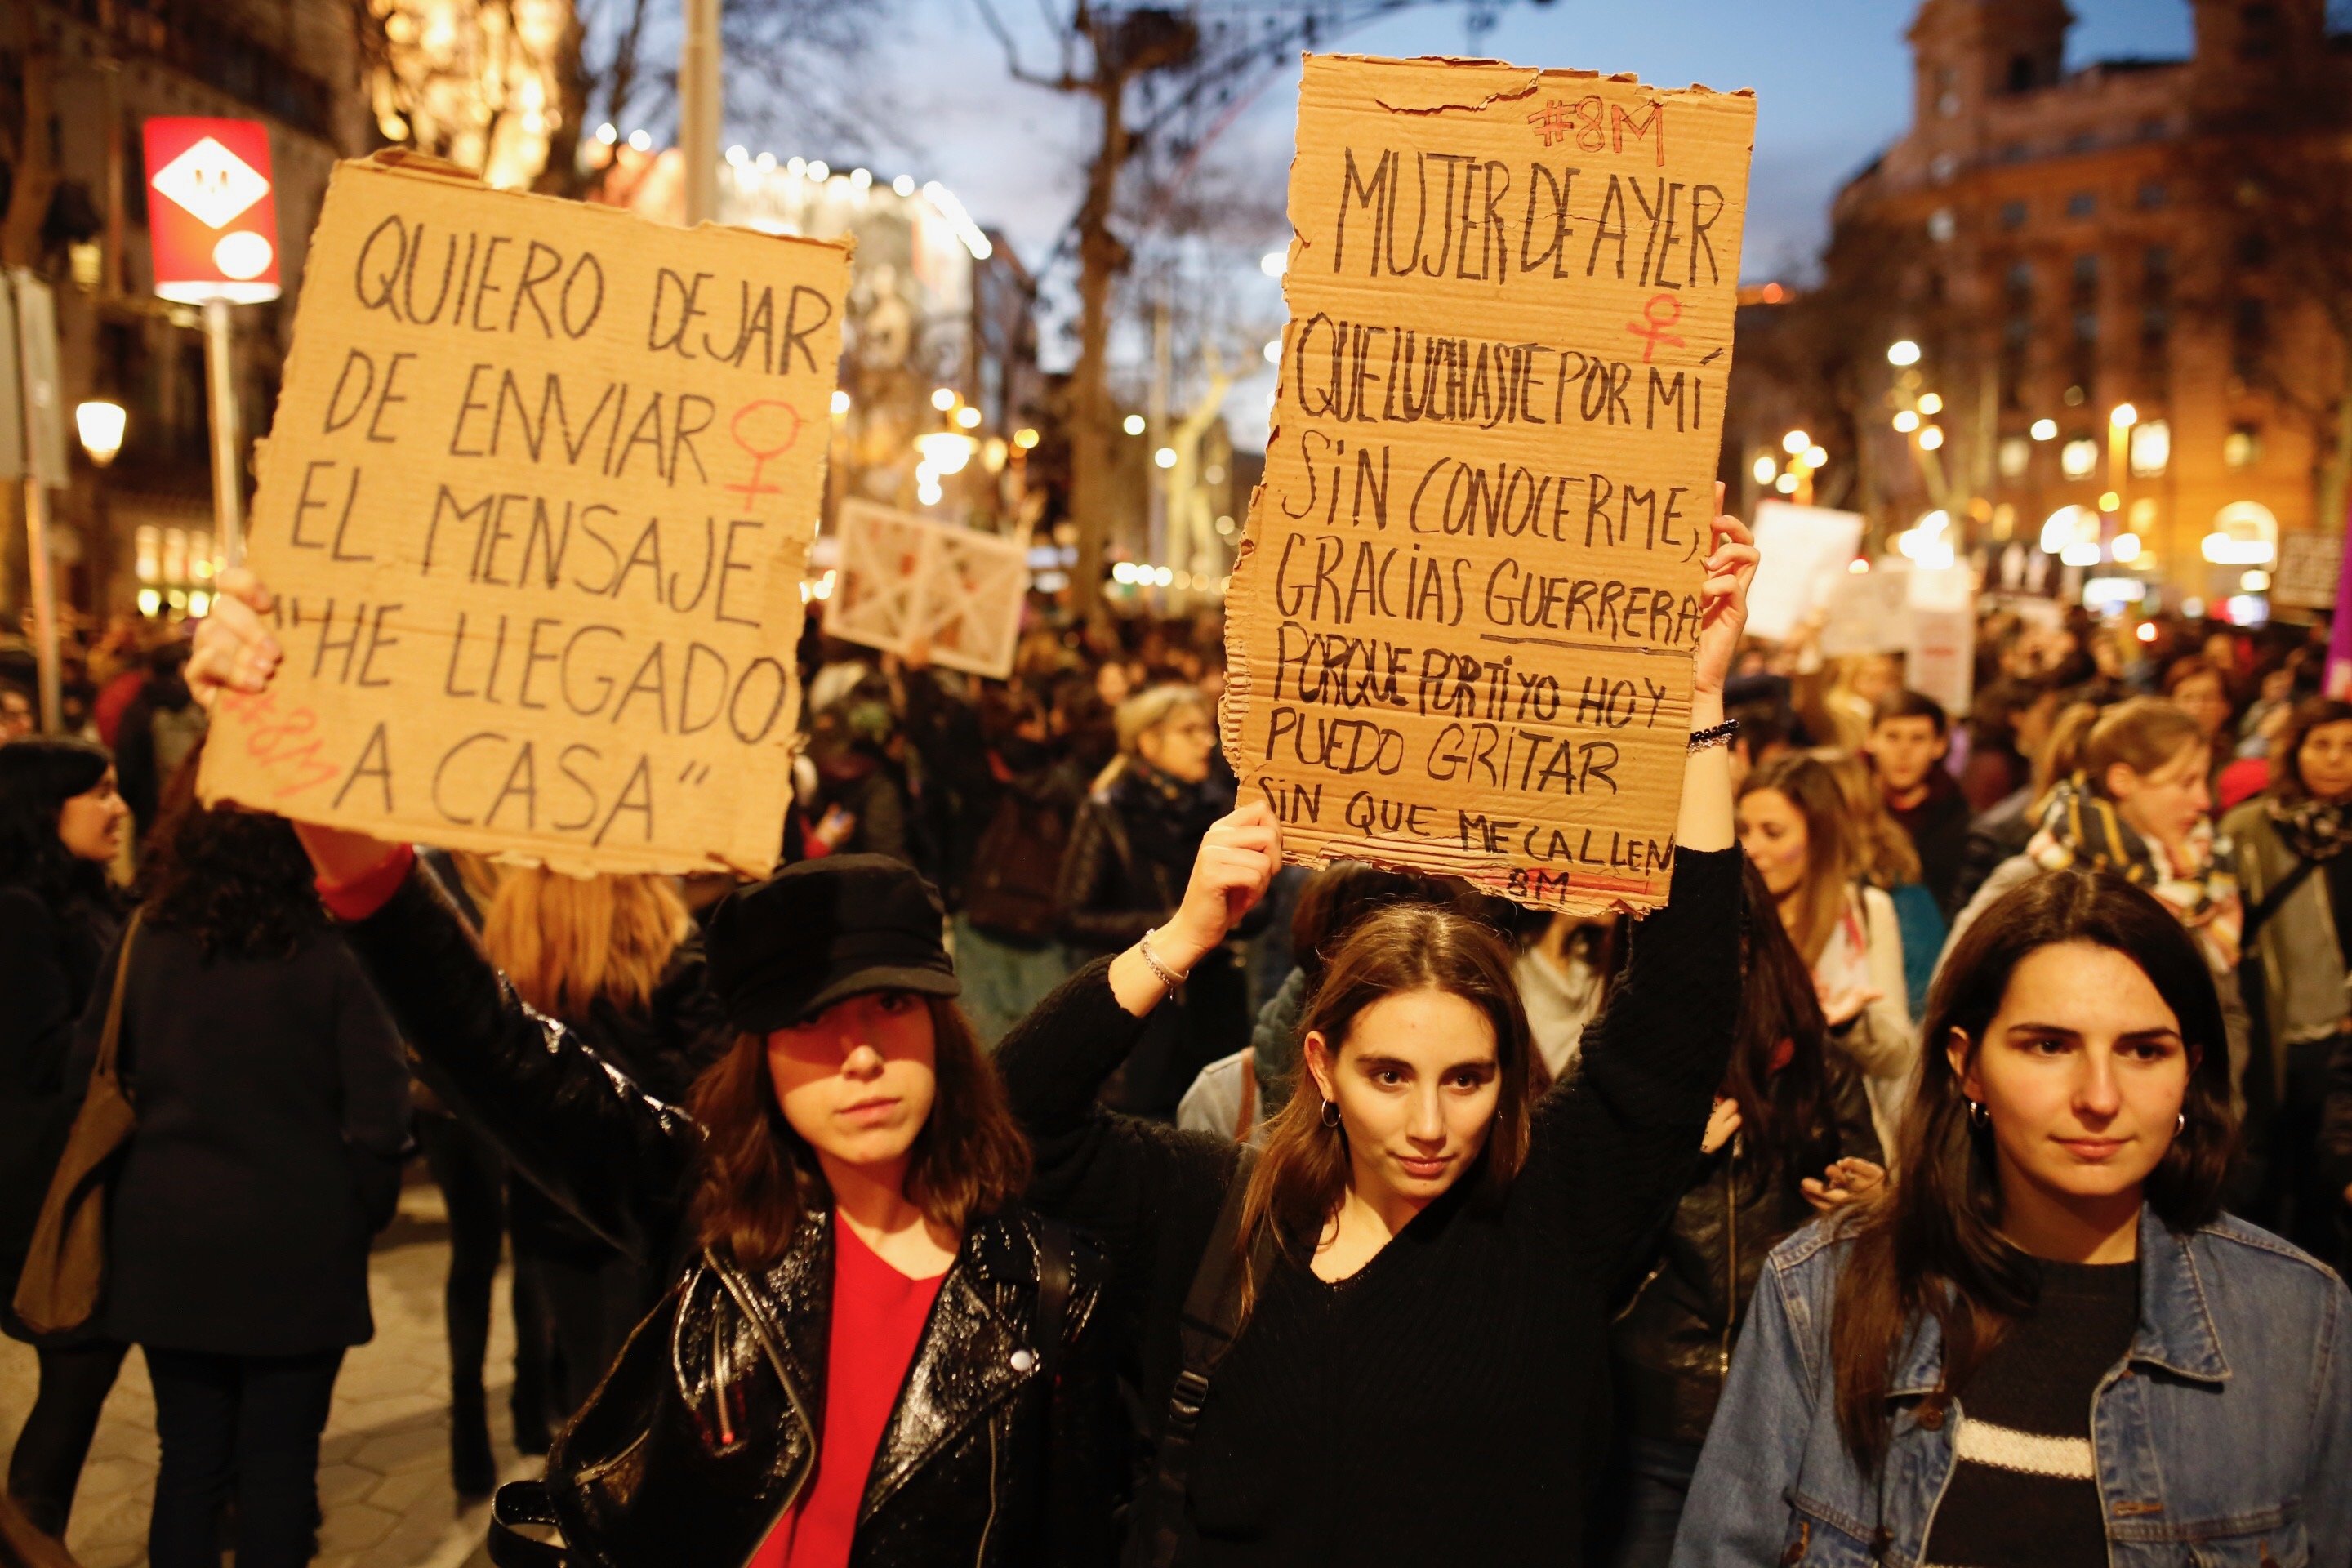 Les violacions augmenten un 18% a Catalunya durant el 2018